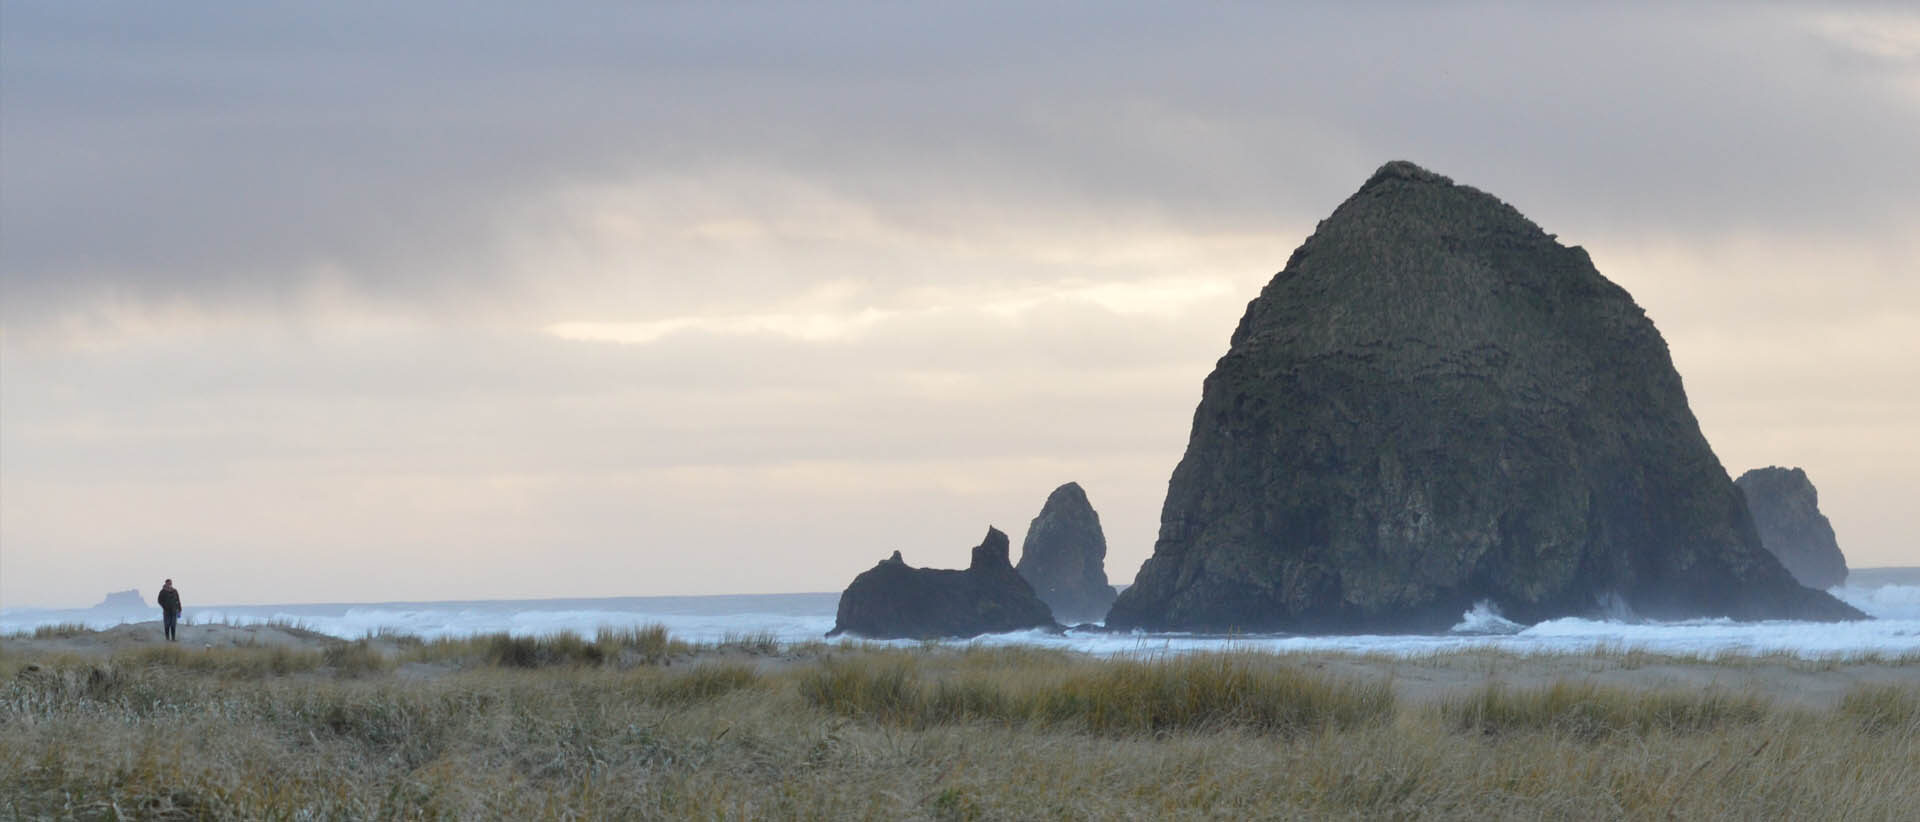 Haystack Rock at the Oregon Islands National Wildlife Refuge